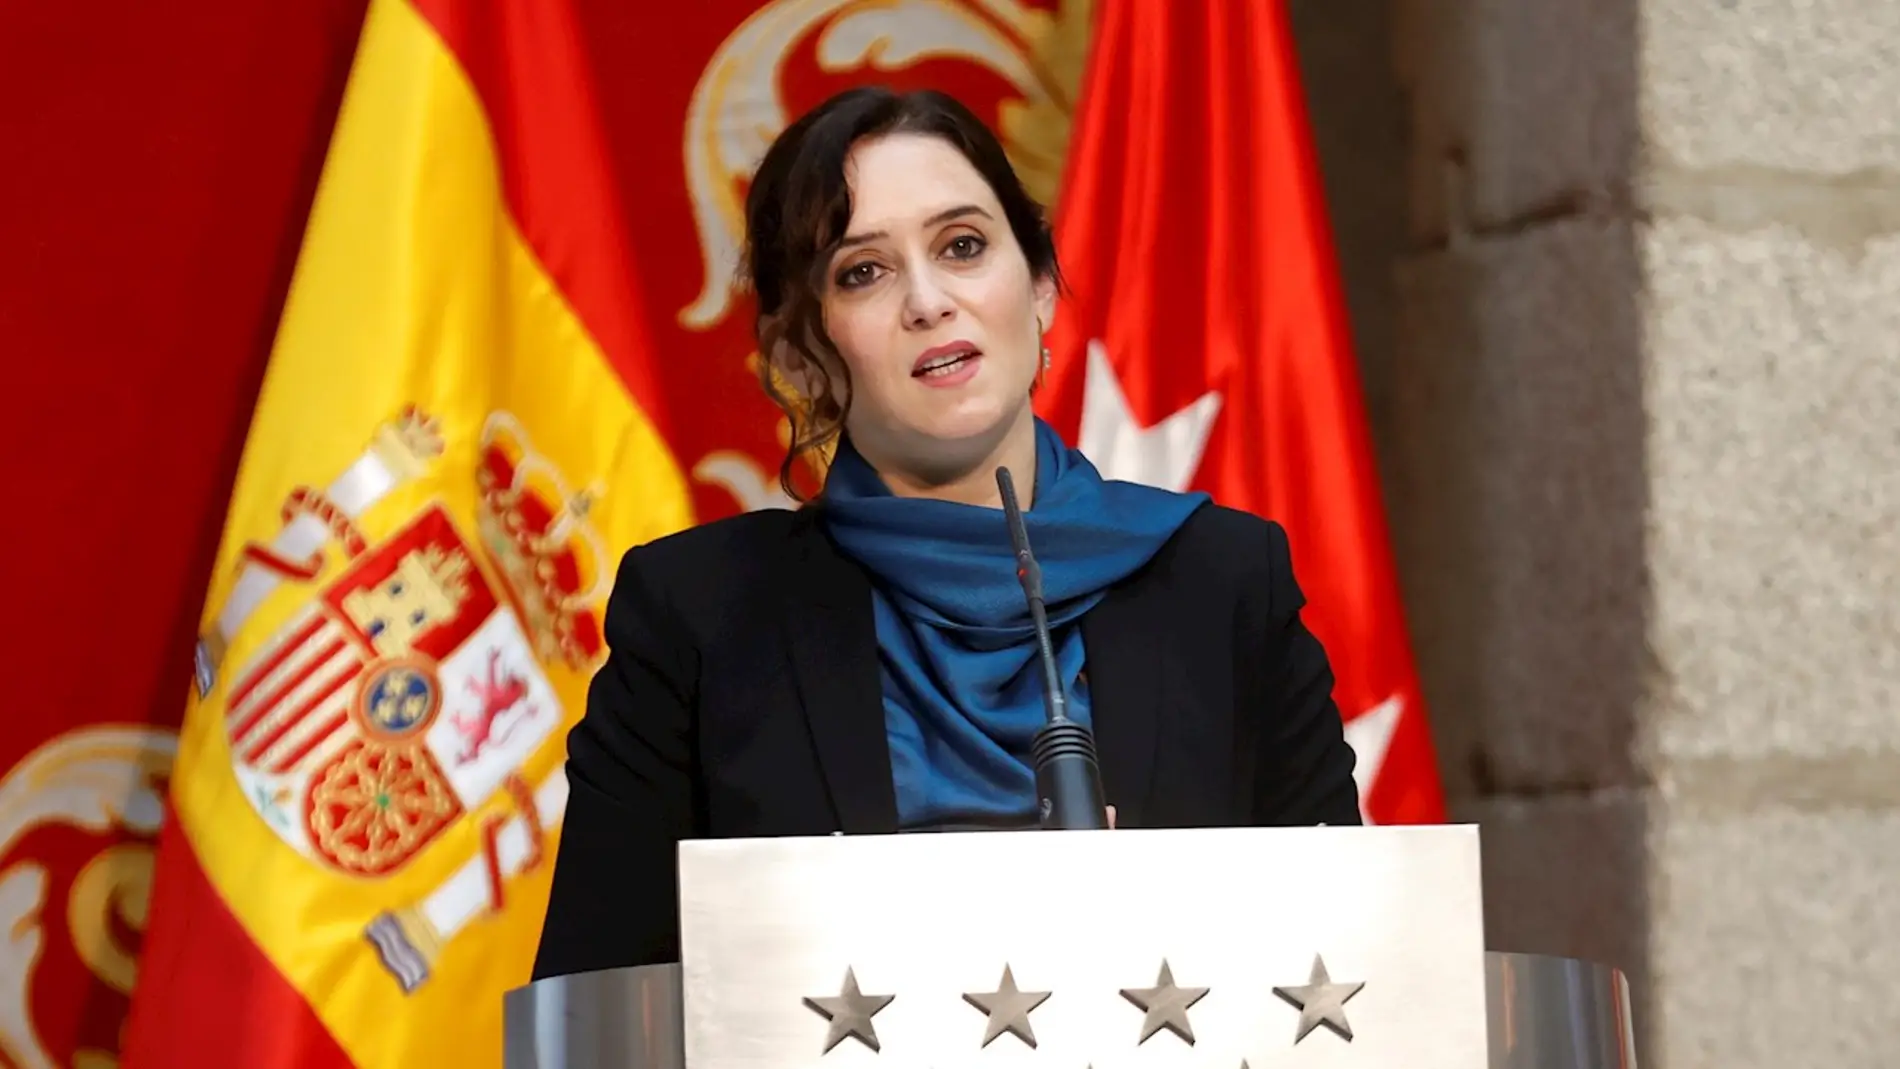 La presidenta de la Comunidad de Madrid, Isabel Díaz Ayuso, en una imagen de archivo